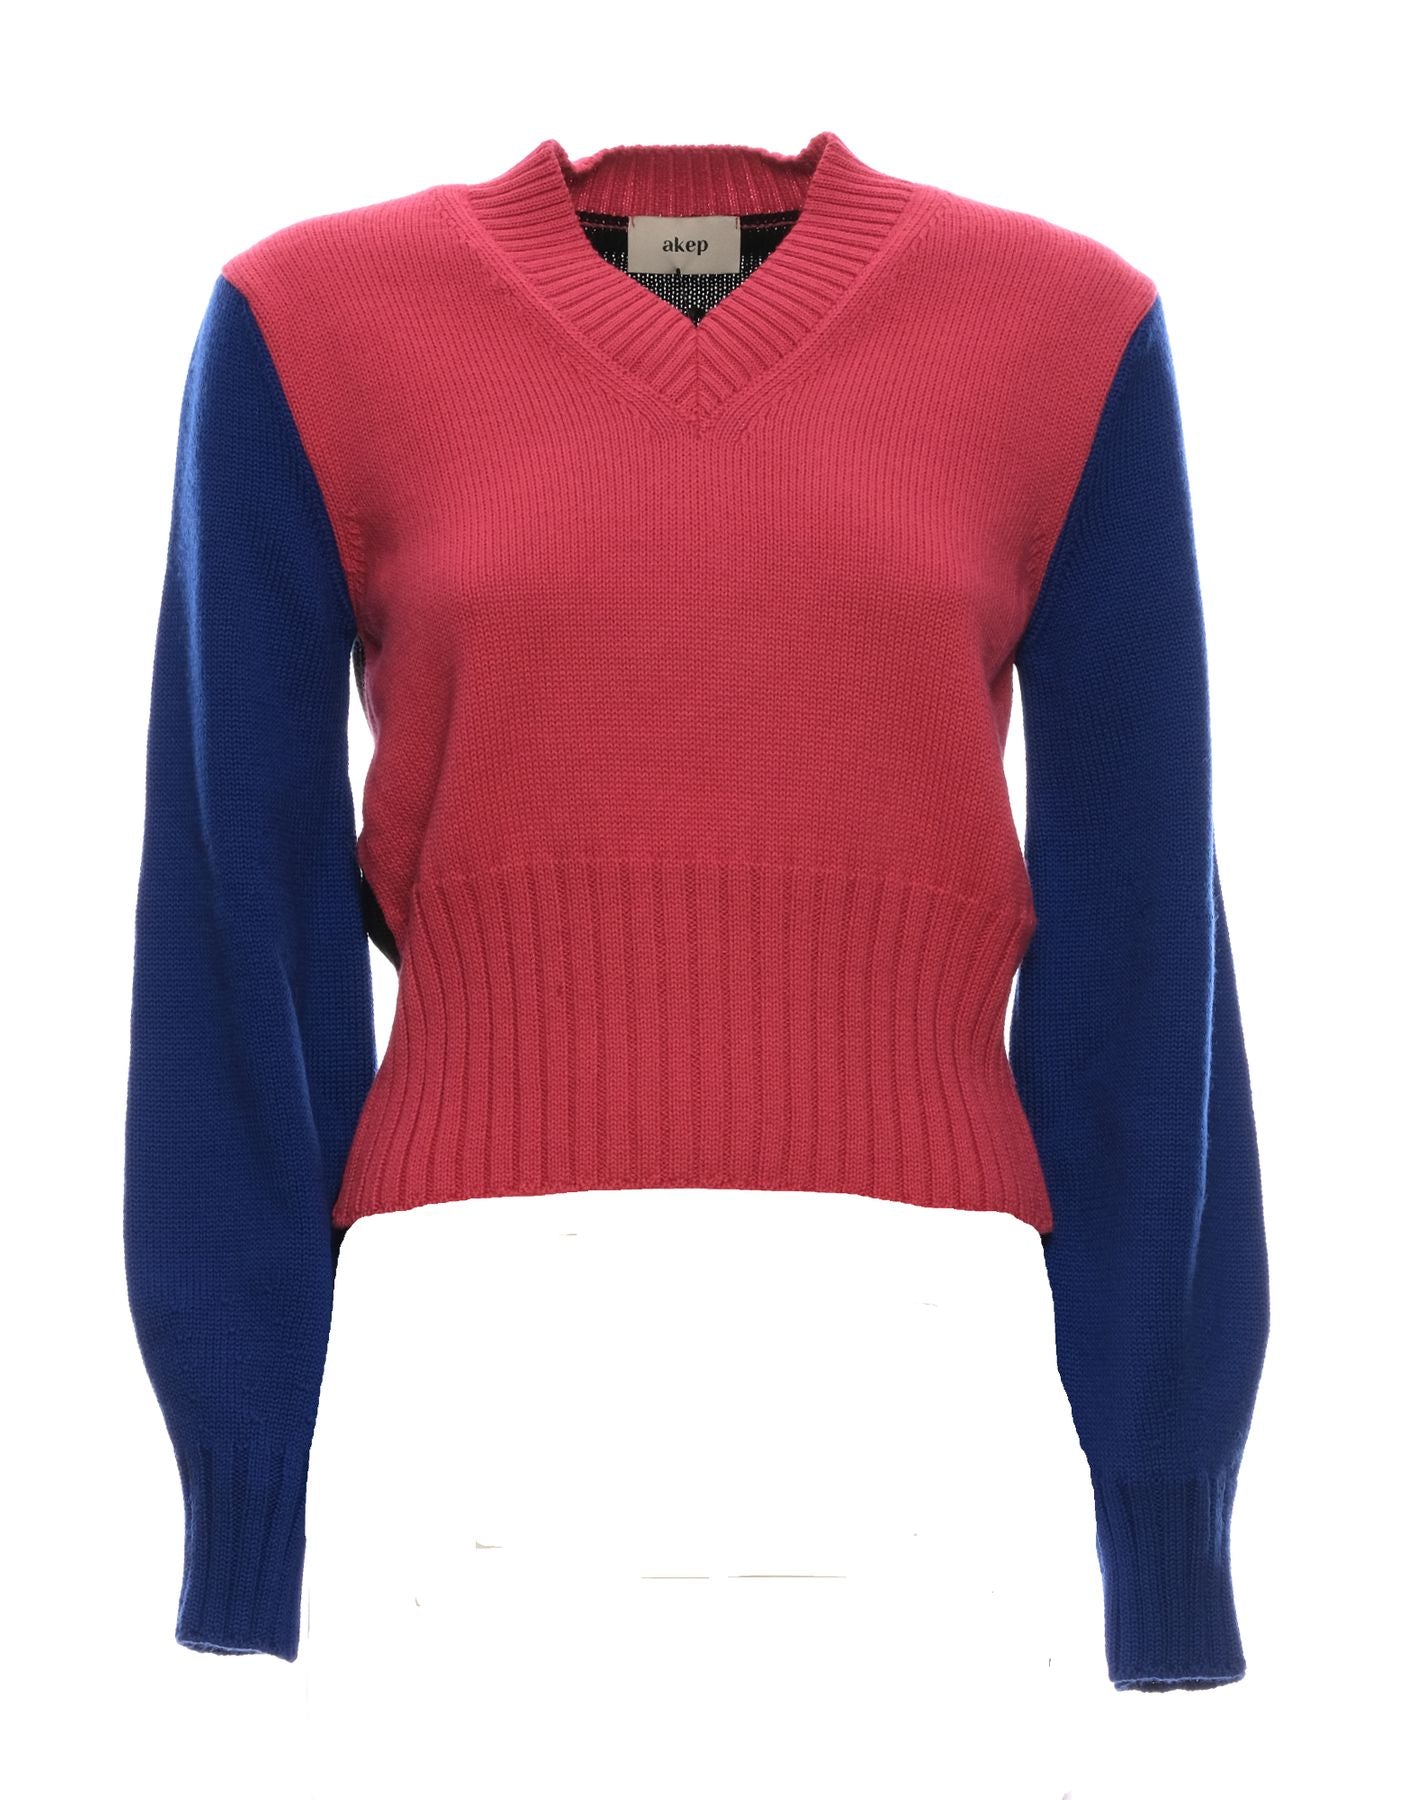 Sweater for women AKEP K11039 VARIANTE 1